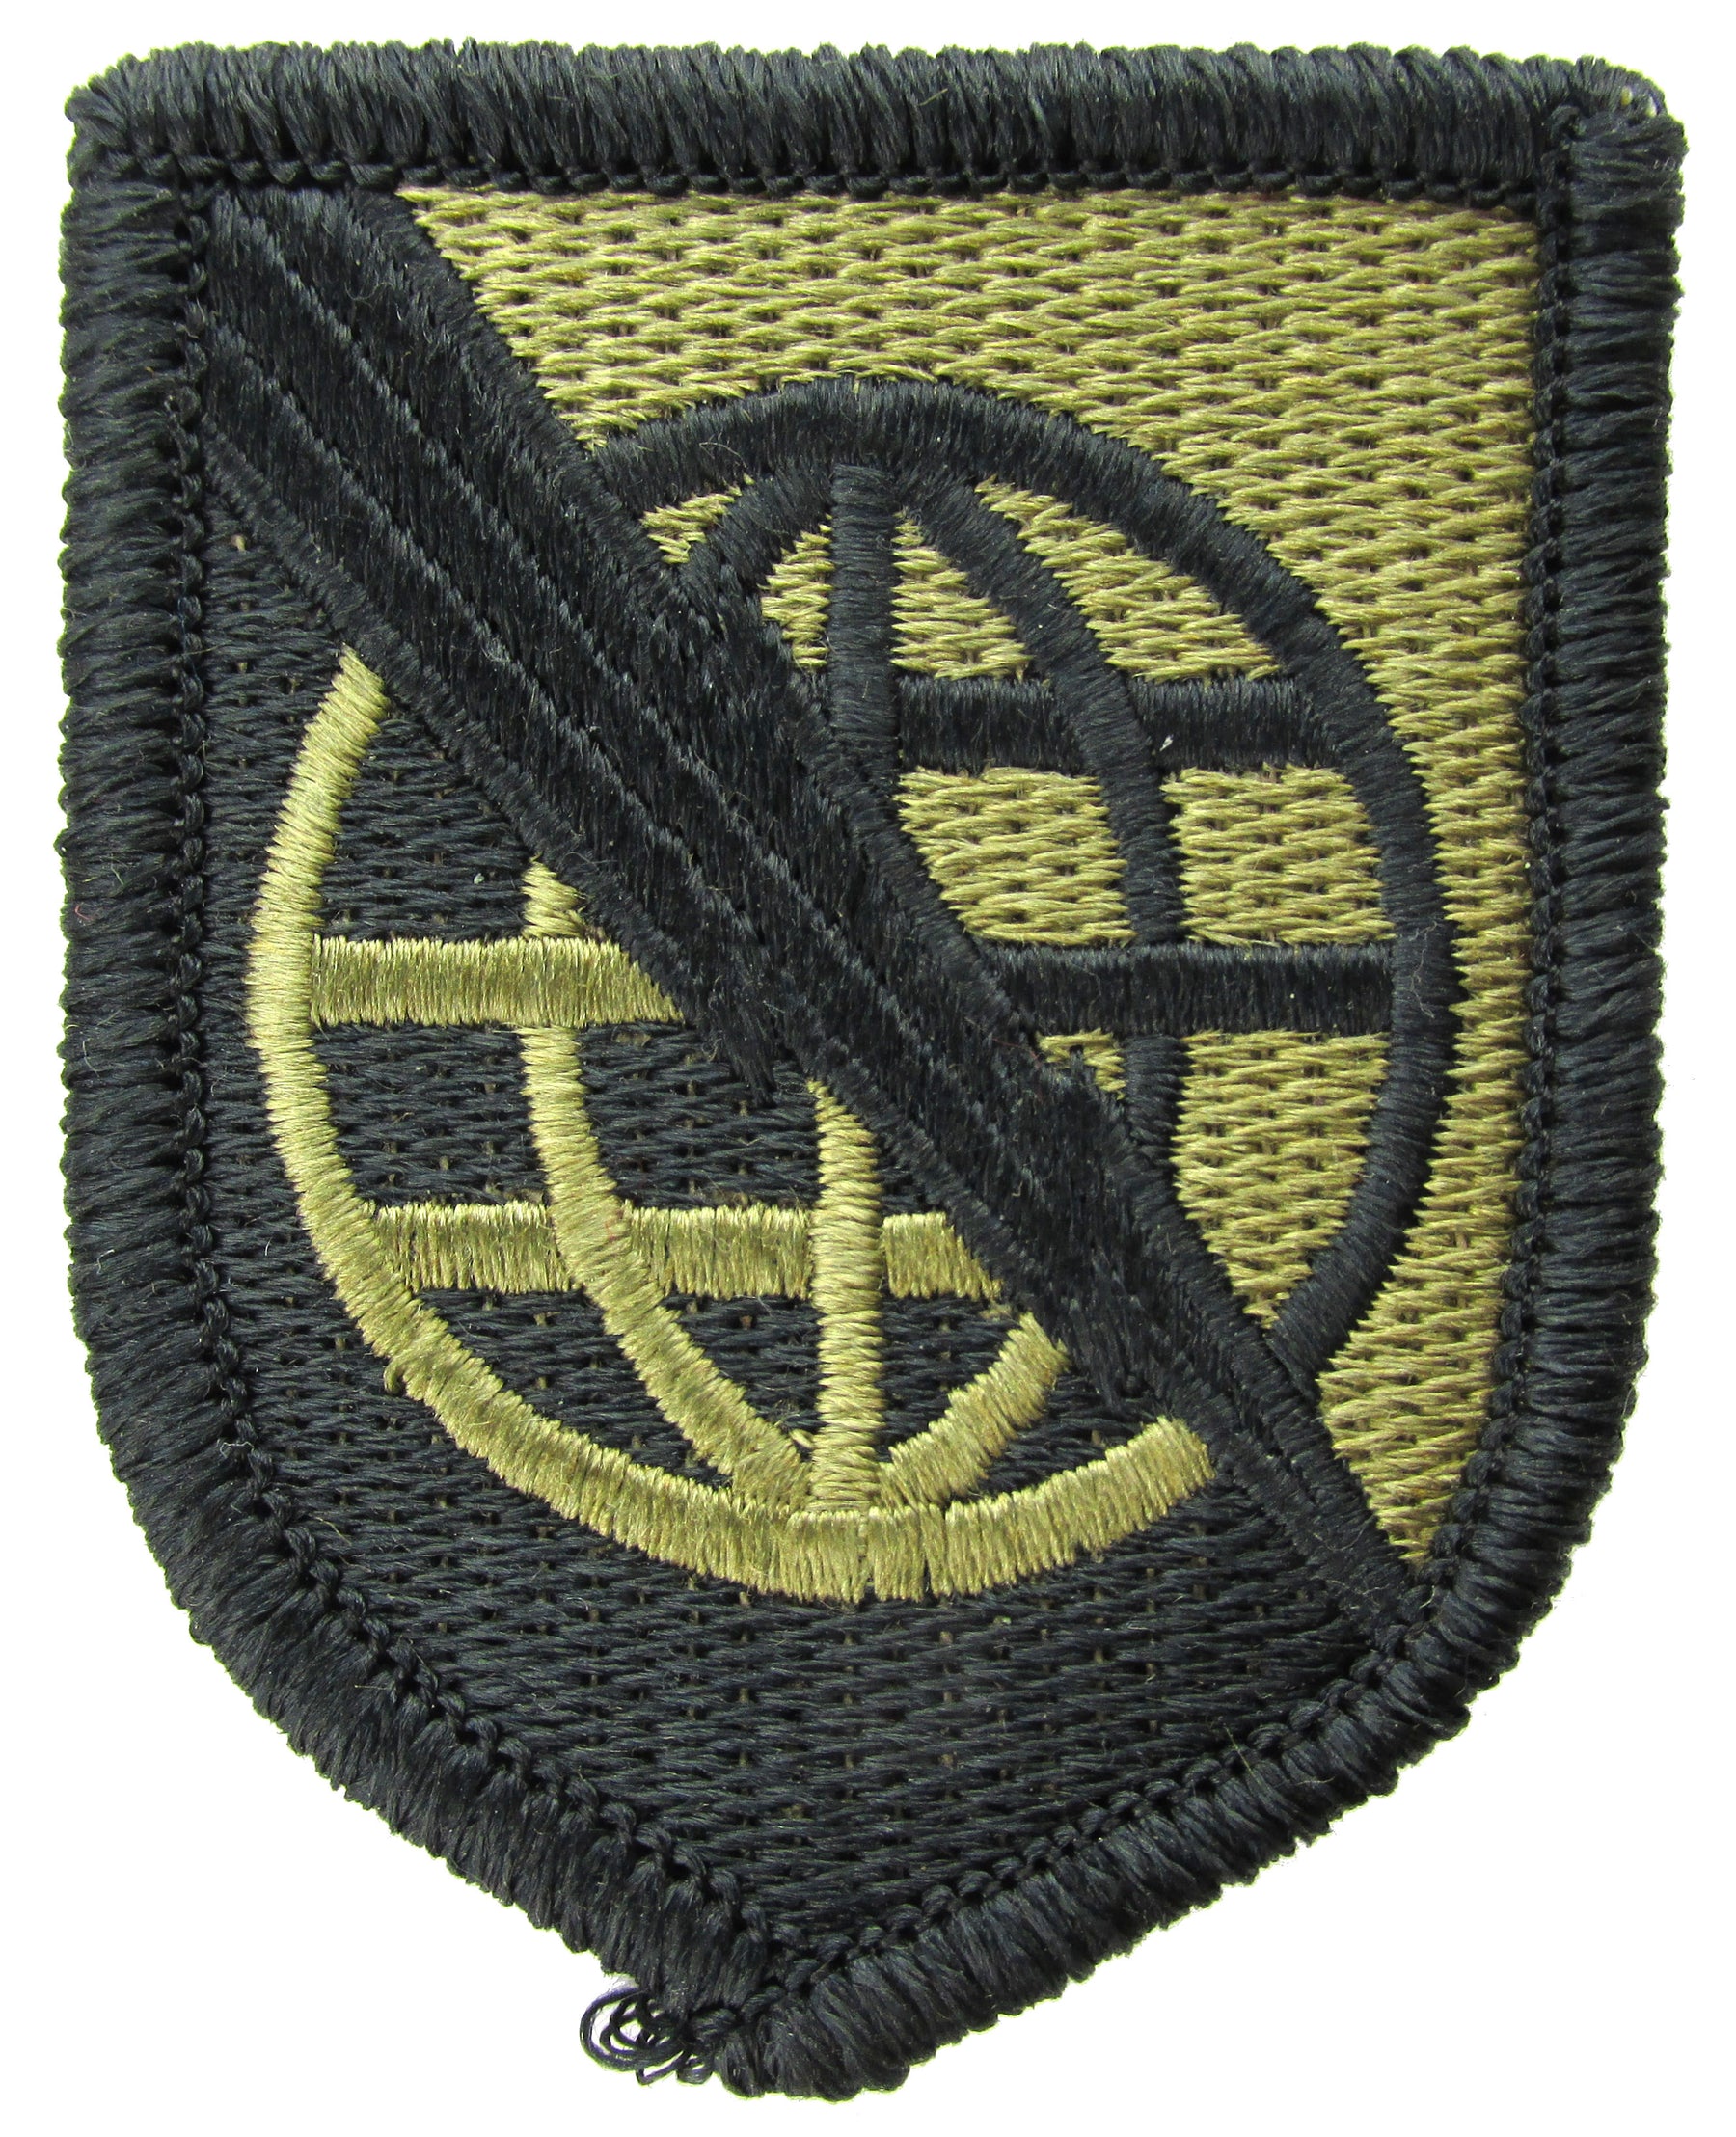 USAMM - U.S. Army Recruiting Command (USAREC) Multicam (OCP) Patch